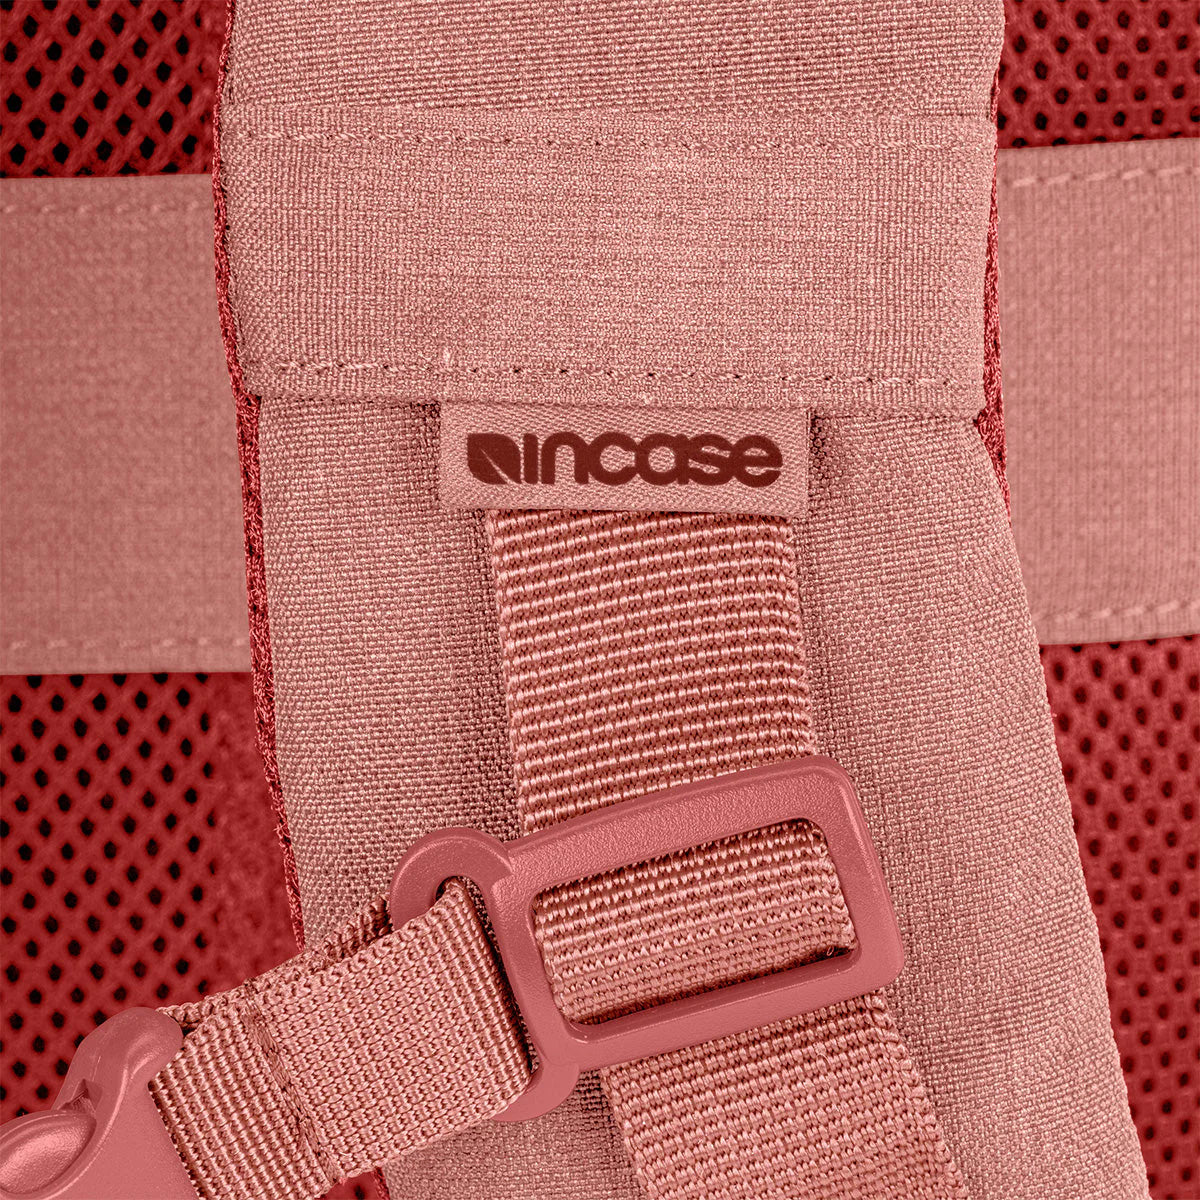 Incase Facet 25L Backpack (Aged Pink)